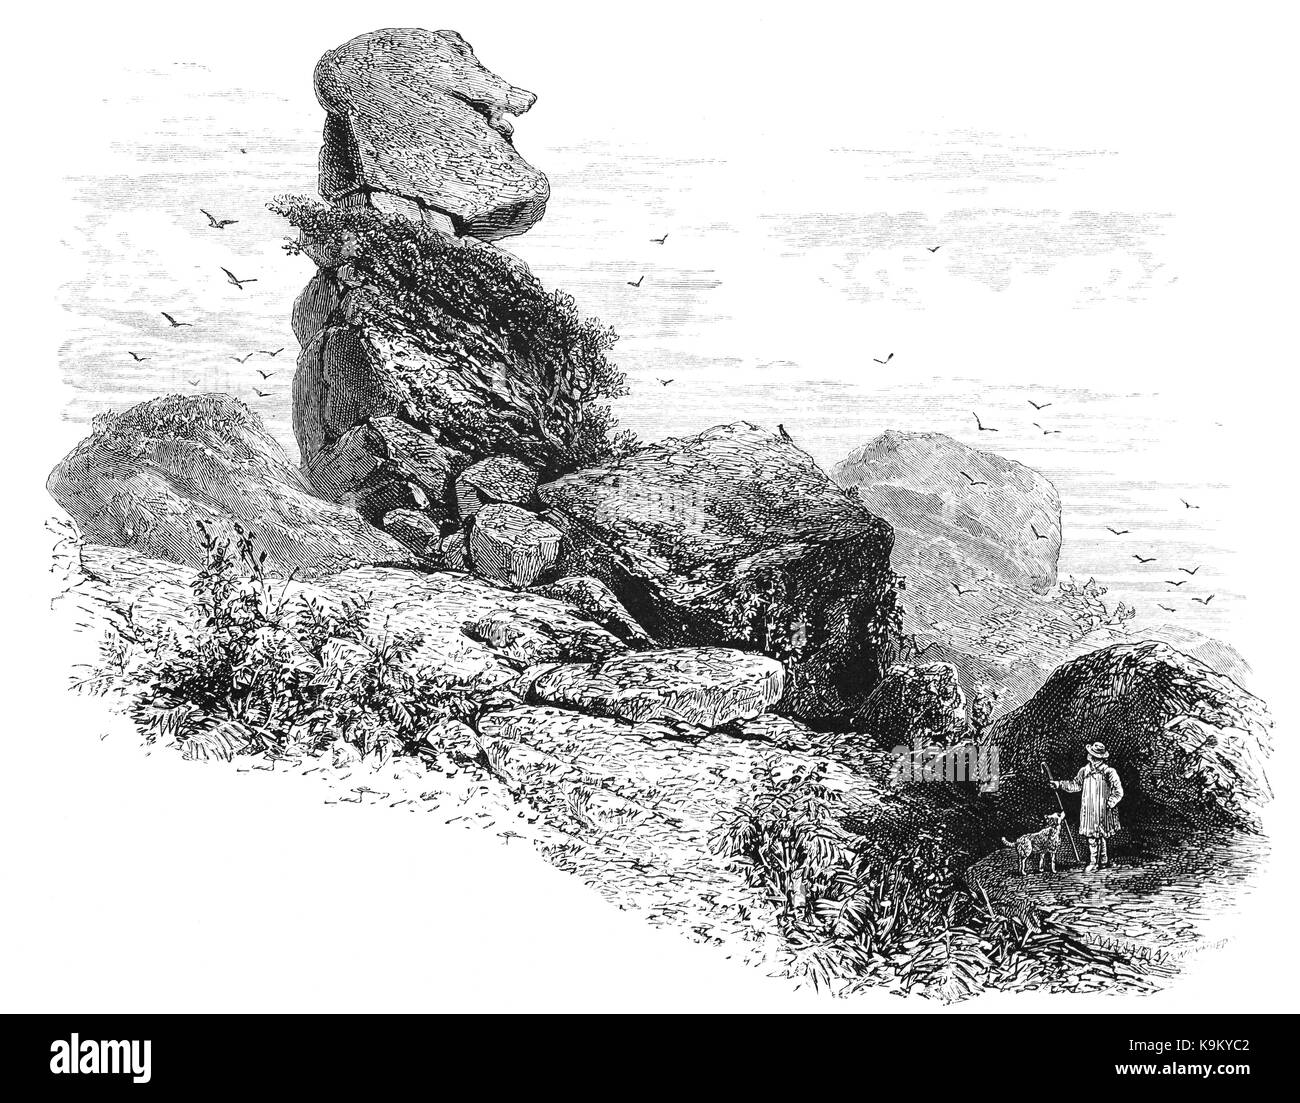 1870: Bowerman del naso è una pila di granito spiovente sul Dartmoor Devon, Inghilterra. Esso è situato sulle pendici settentrionali dei Hayne giù, a circa un miglio dal hound Tor e vicino al villaggio di Manaton. Sorge a circa 21,5 piedi alto e è il granito hard core di un ex tor. Foto Stock